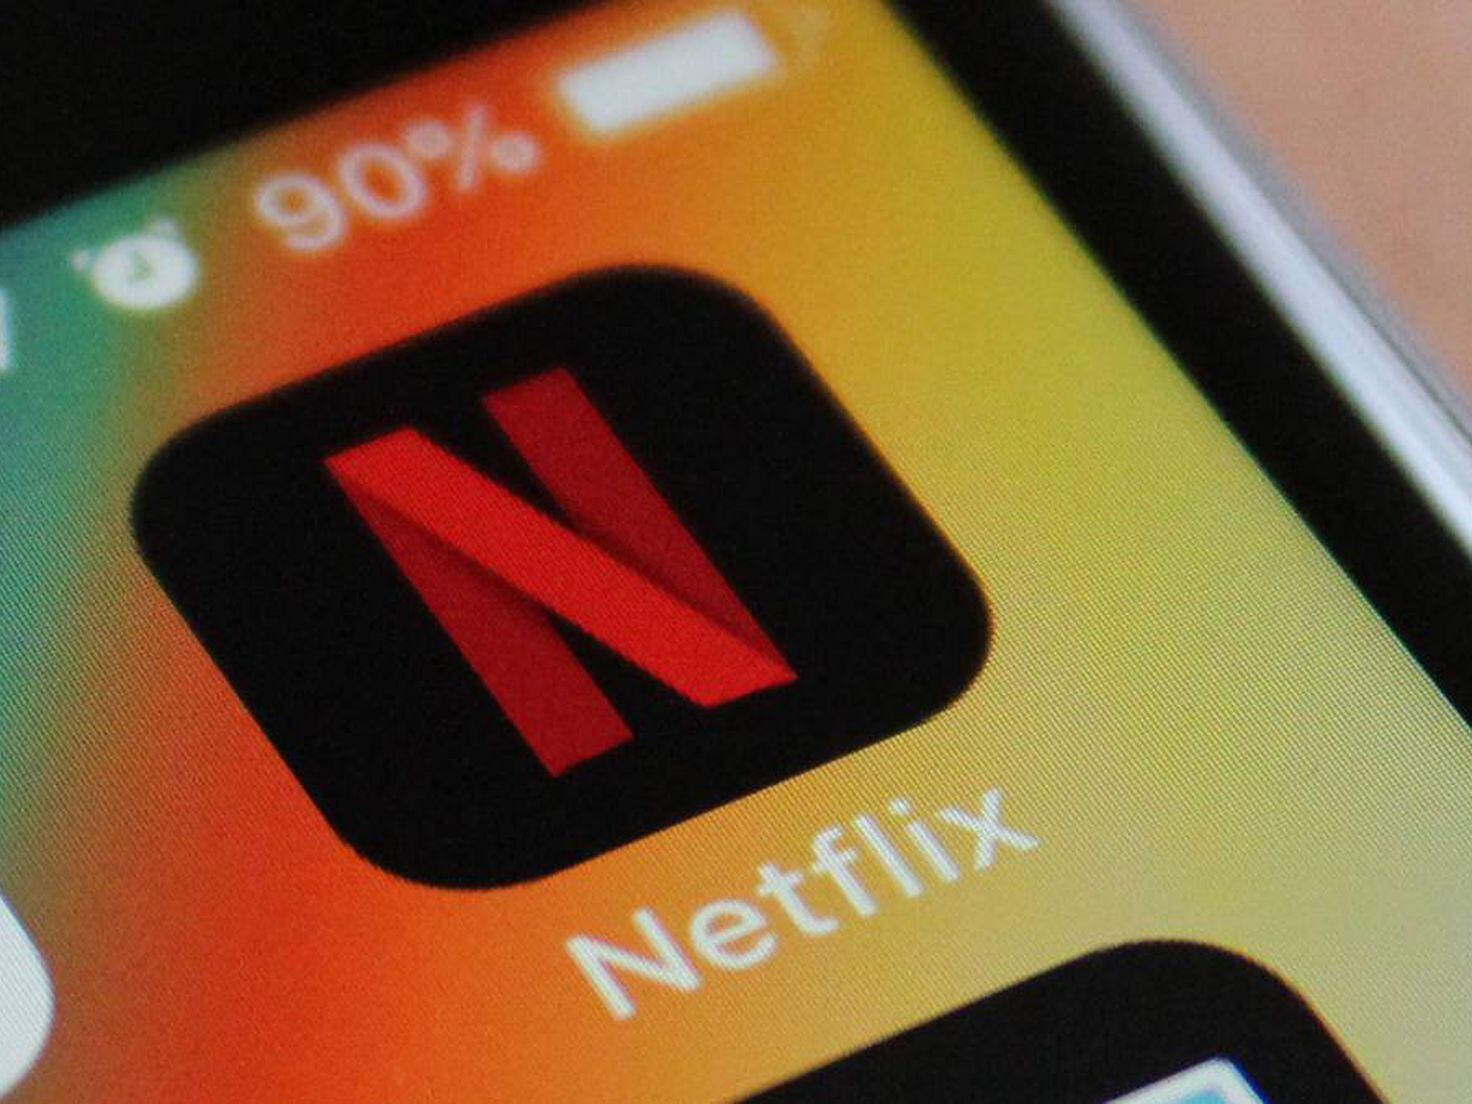 El plan Netflix barato para móviles llega a más países - Meristation